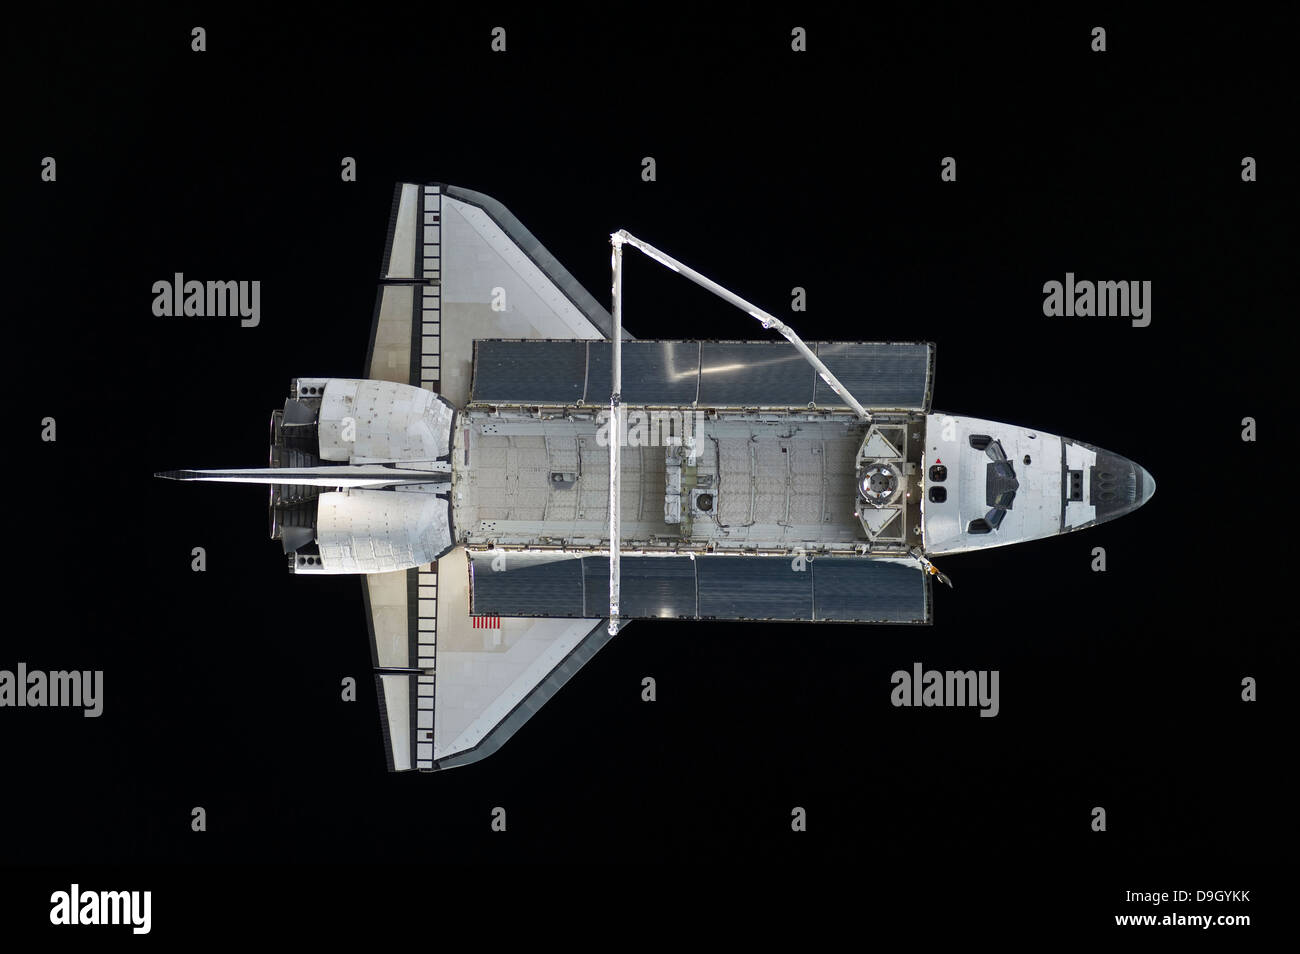 23 mai 2010 - La navette spatiale Atlantis backdropped contre la noirceur de l'espace. Banque D'Images